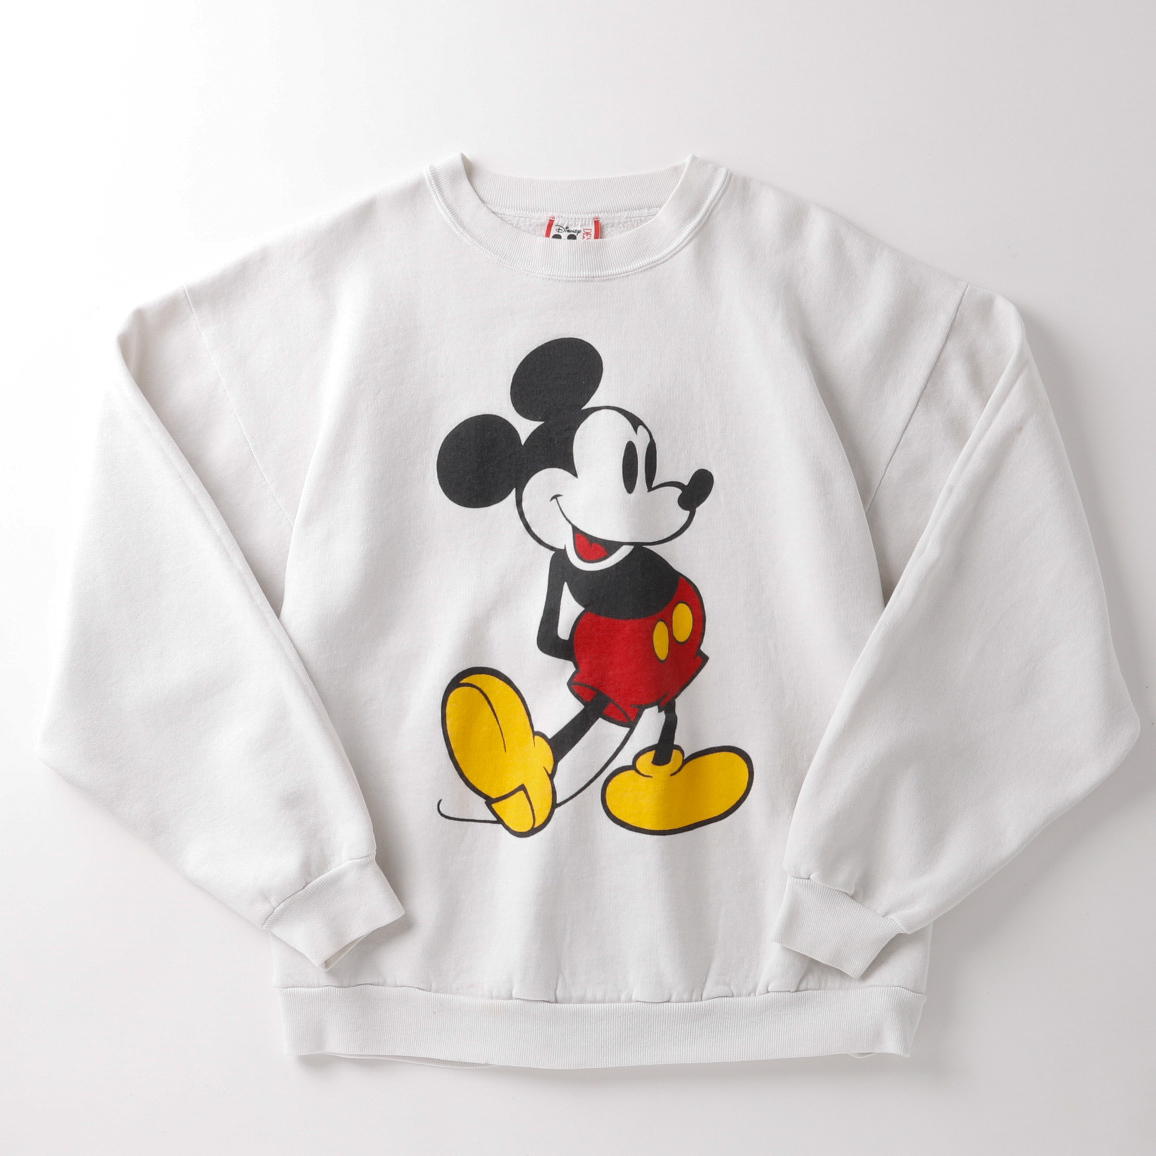 【極美品】80s Mickey mouse Vintage sweatshirt big size rare item Made in USA／80年代 ヴィンテージ ミッキーヴィンテージ スウェットトレーナー USA製 ビッグサイズ 白 レアカラー 逸品